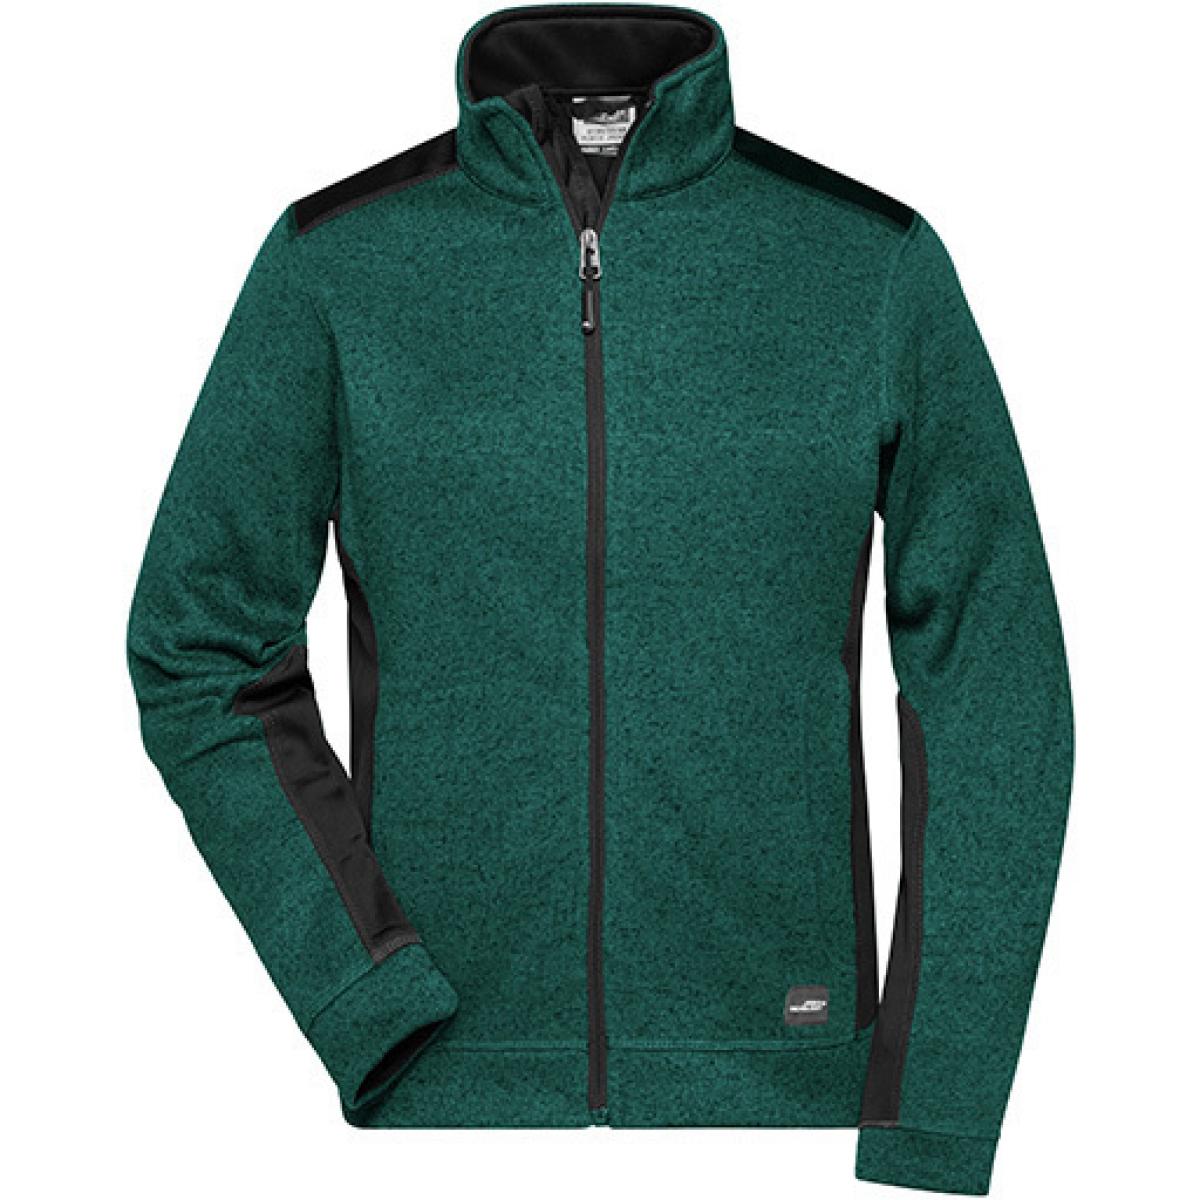 Hersteller: James+Nicholson Herstellernummer: JN861 Artikelbezeichnung: Damen Jacke, Ladies‘ Knitted Workwear Fleece Jacket -STRONG- Farbe: Dark Green Melange/Black